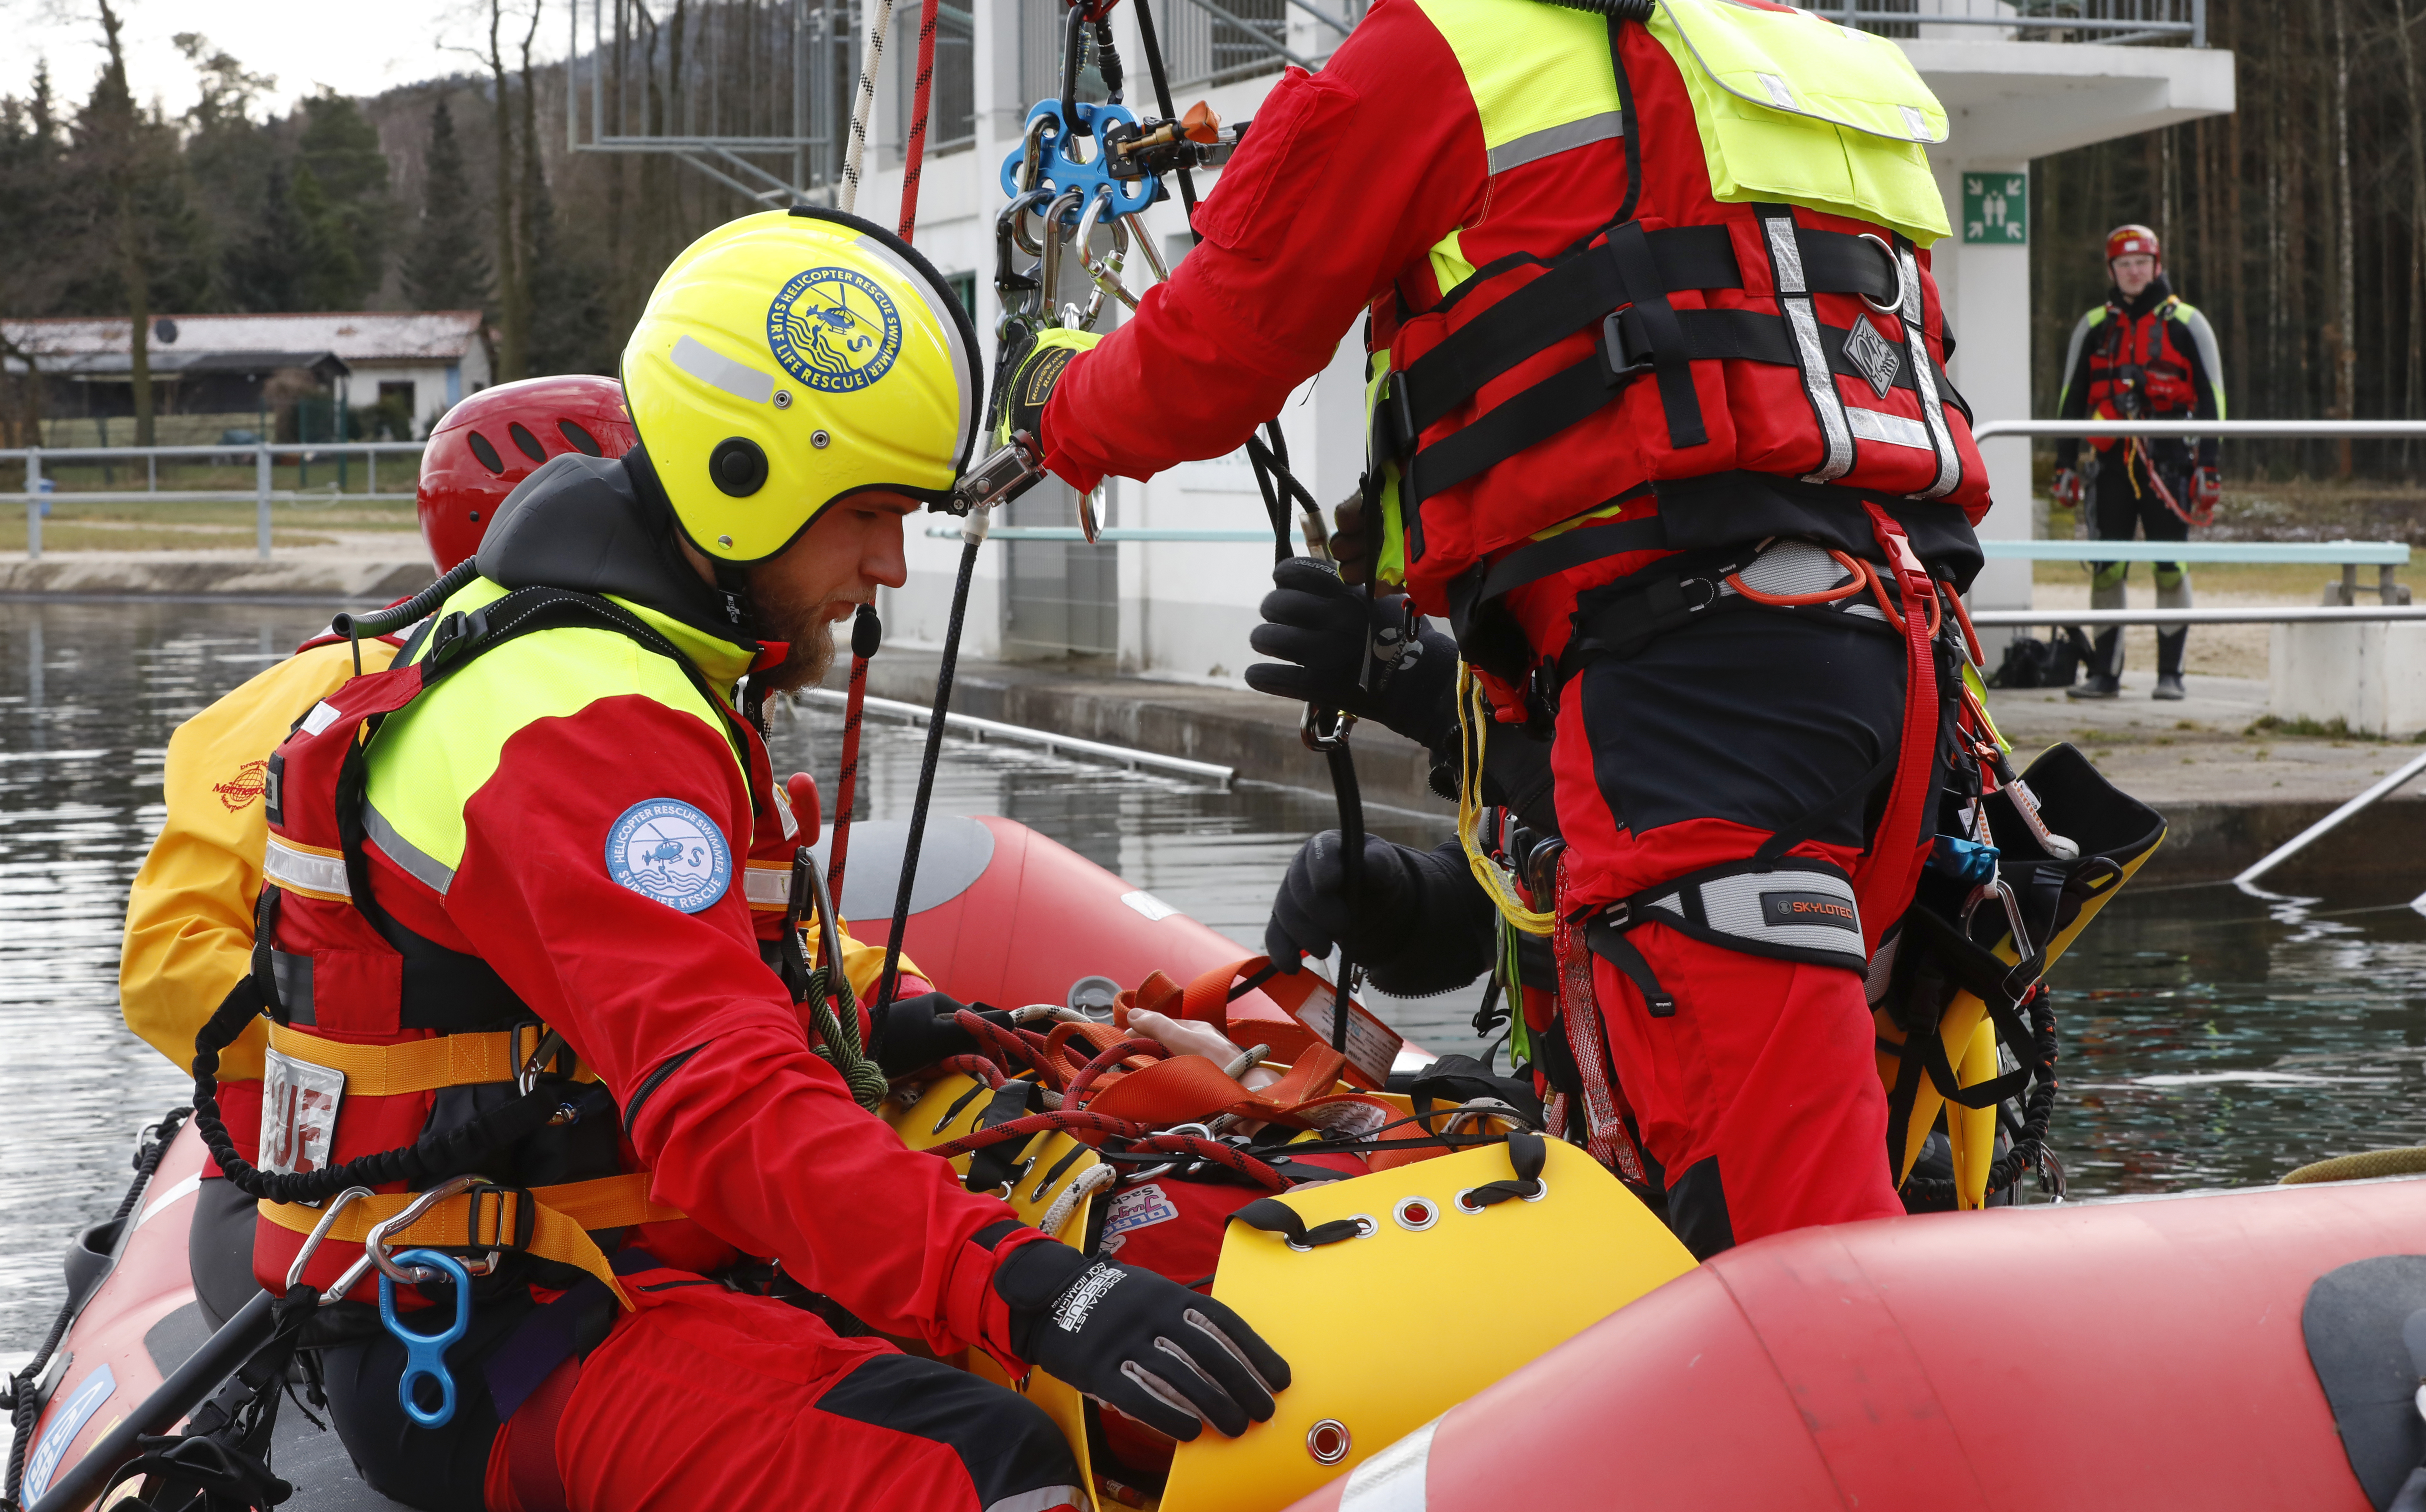 Urgence en direct | L'émergence du HRS - Surf Life Rescue: sauvetage nautique et sécurité image 38